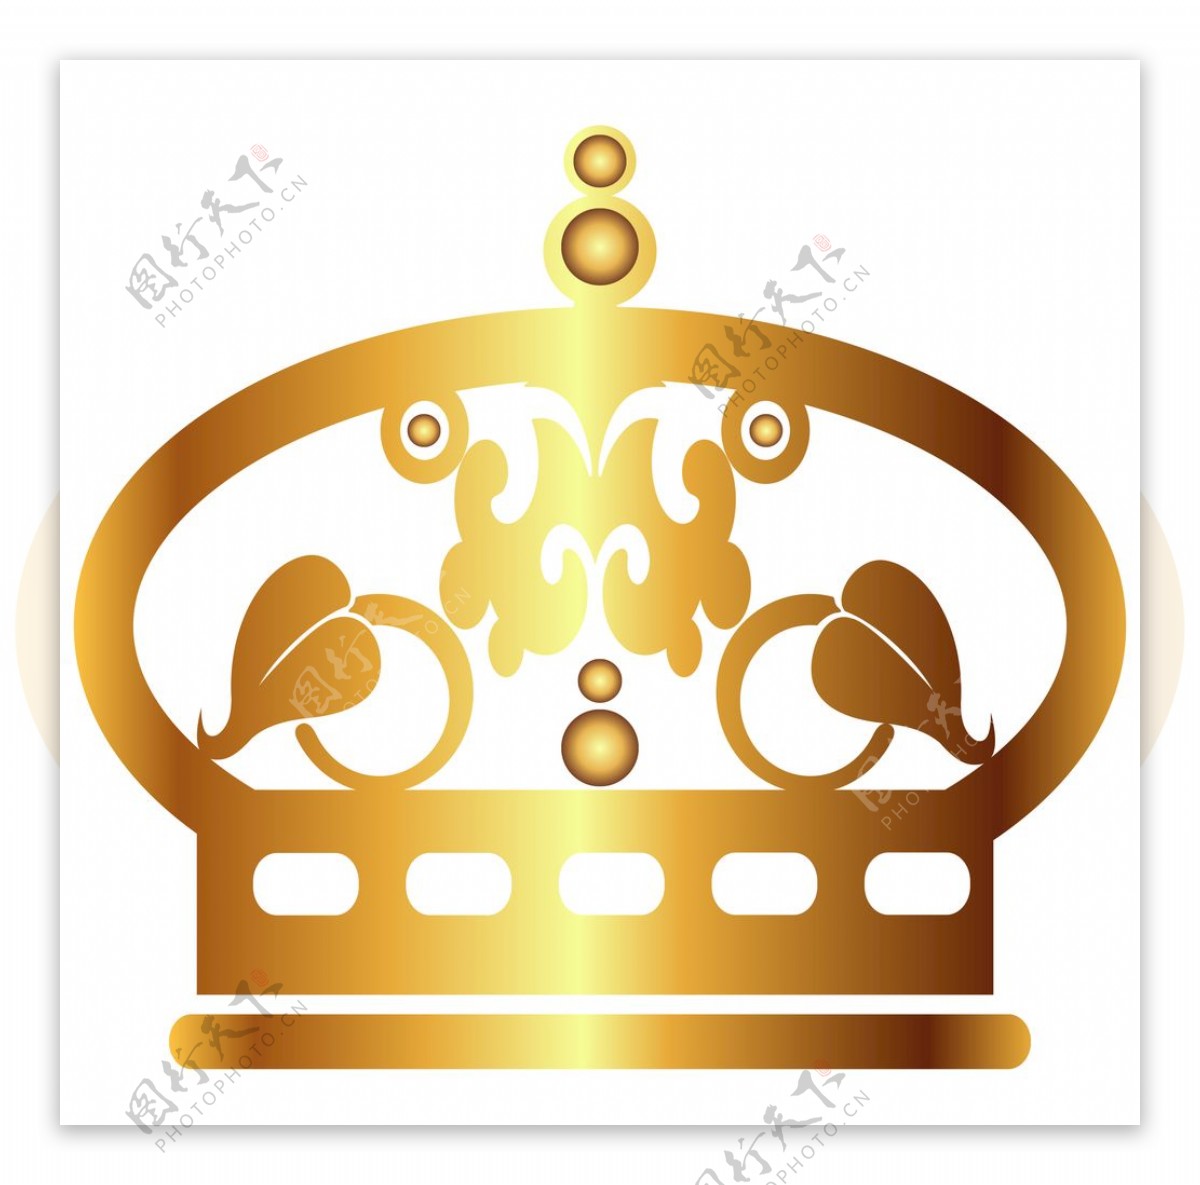 皇冠图标集纹章符号矢量图插图 向量例证. 插画 包括有 符号, 图标, 图象, 剪影, 王子, 经典, 权威 - 172190442